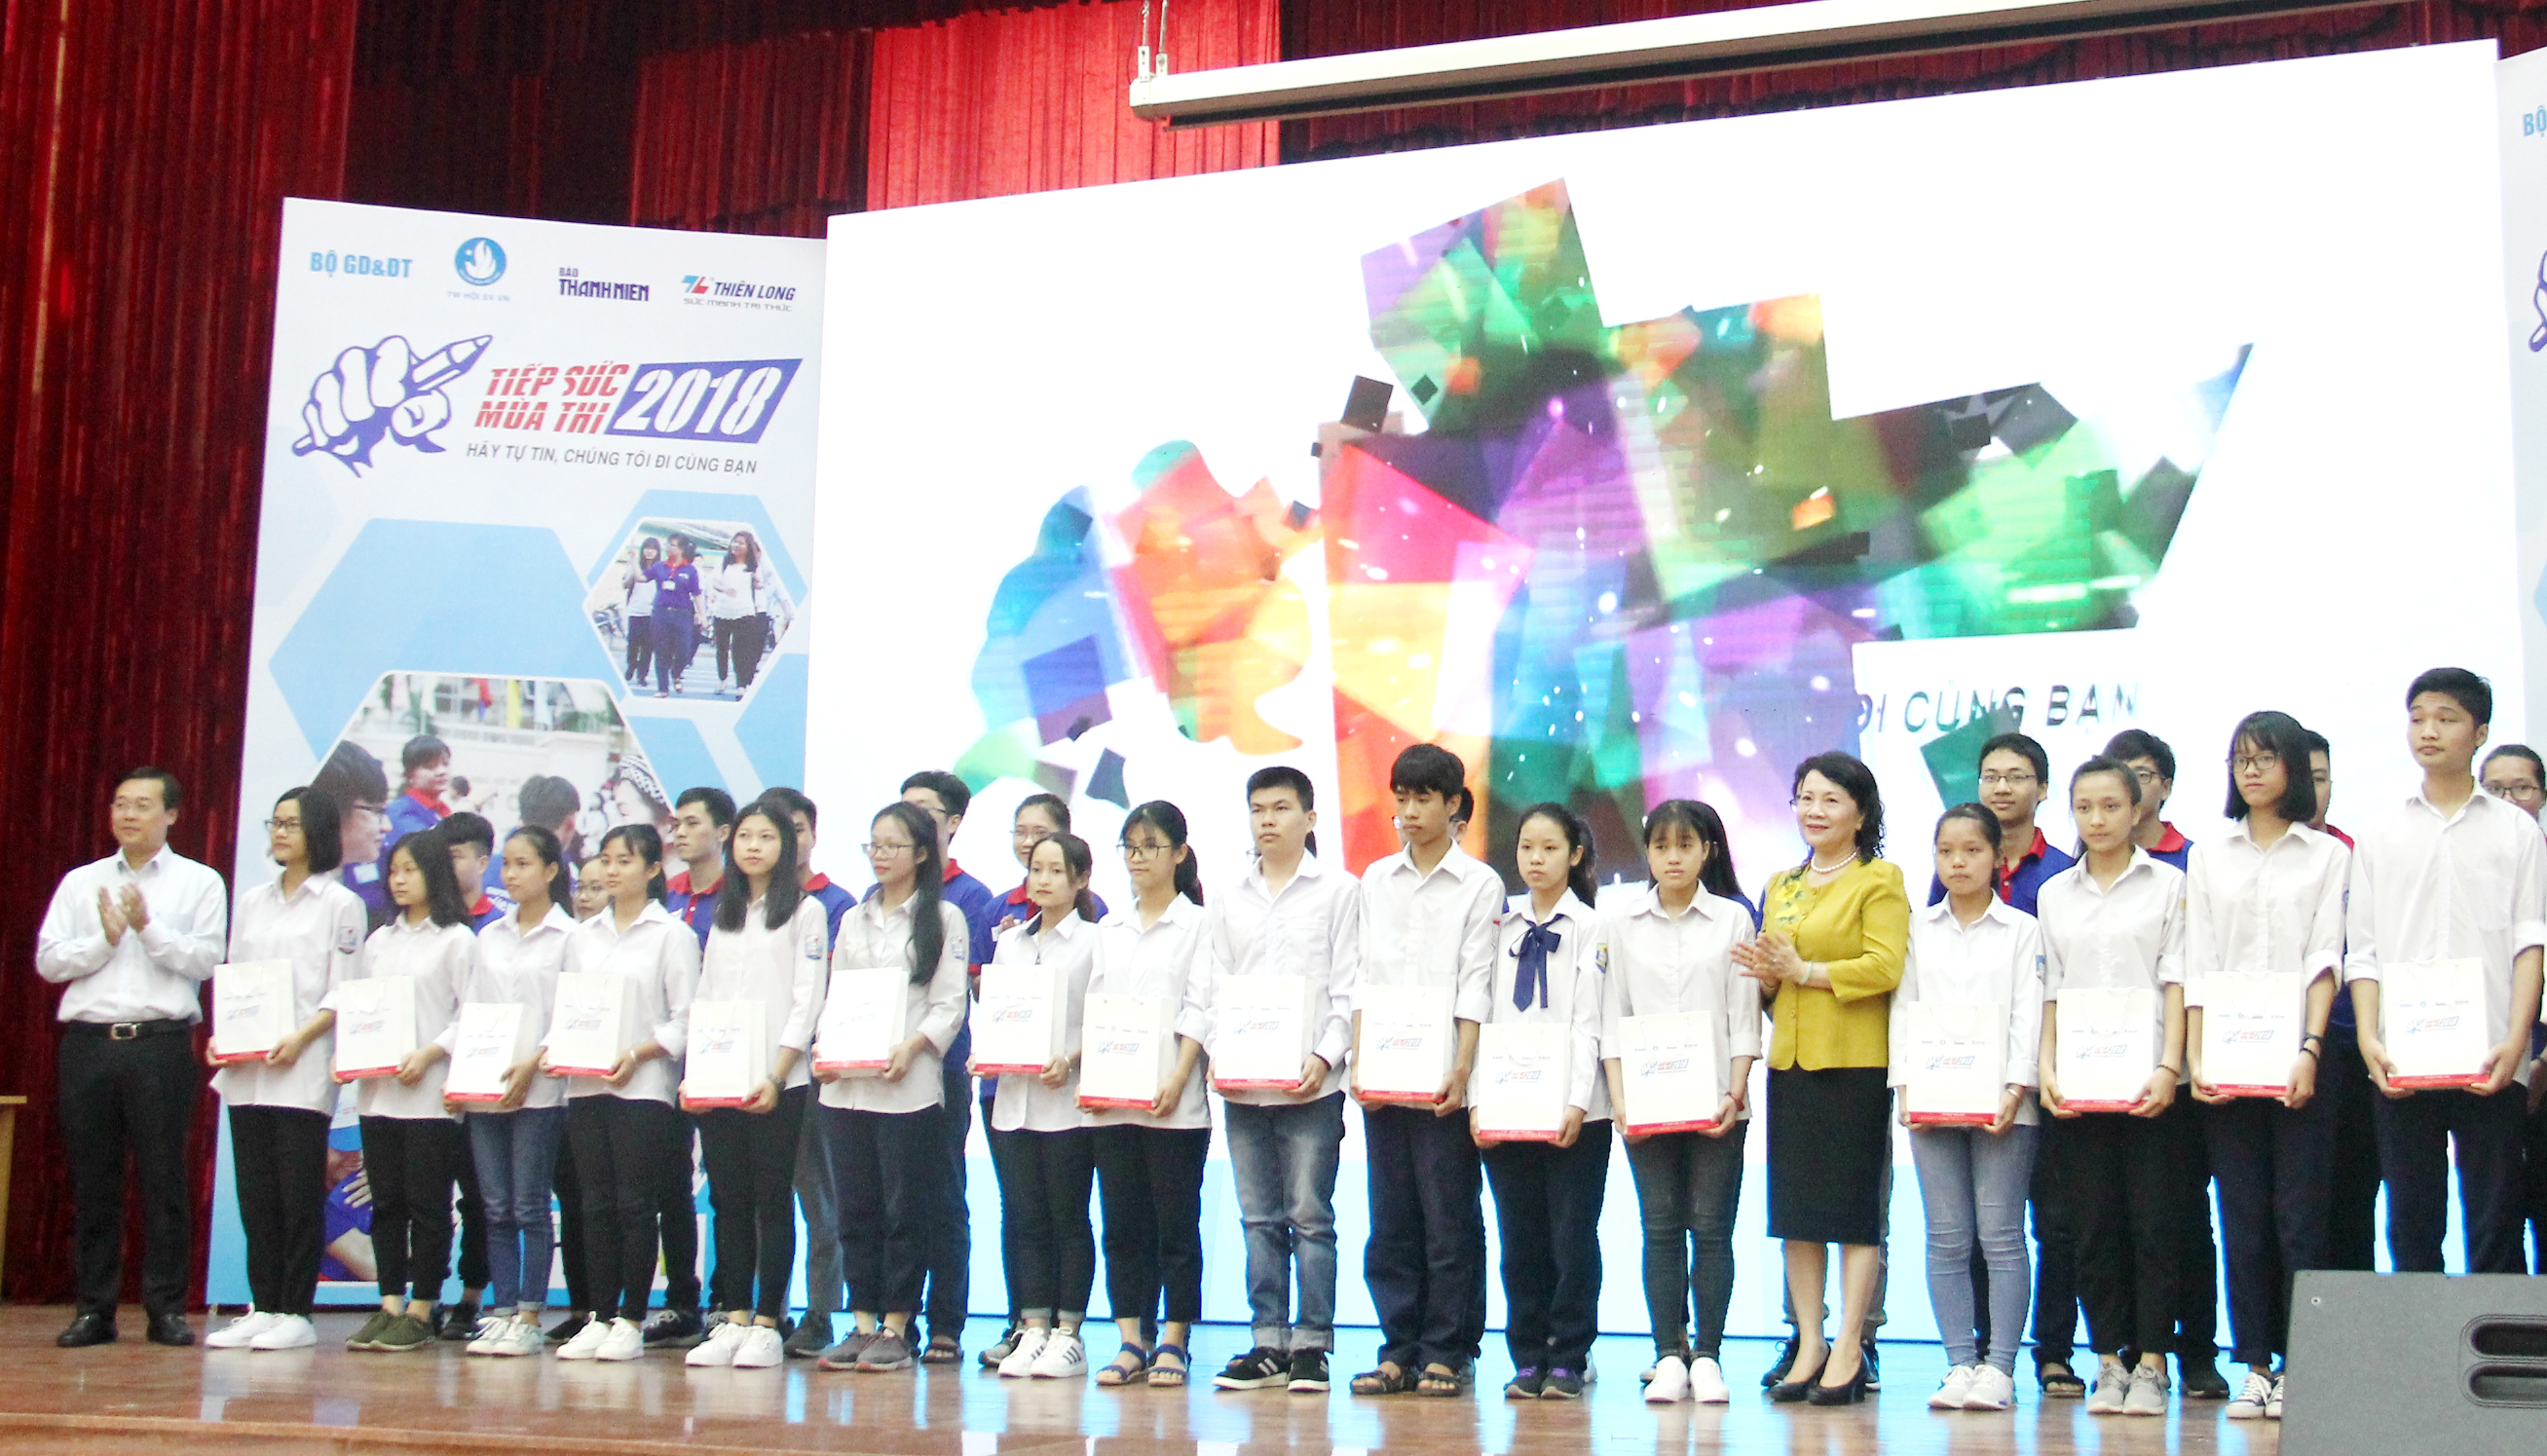 Dịp này, Trung ương Hội SVVN đã trao 20 phần quà hỗ trợ cho các thí sinh có hoàn cảnh khó khăn trên địa bàn thành phố Hà Nội sẽ tham dự kì thi THPT quốc gia năm 2018